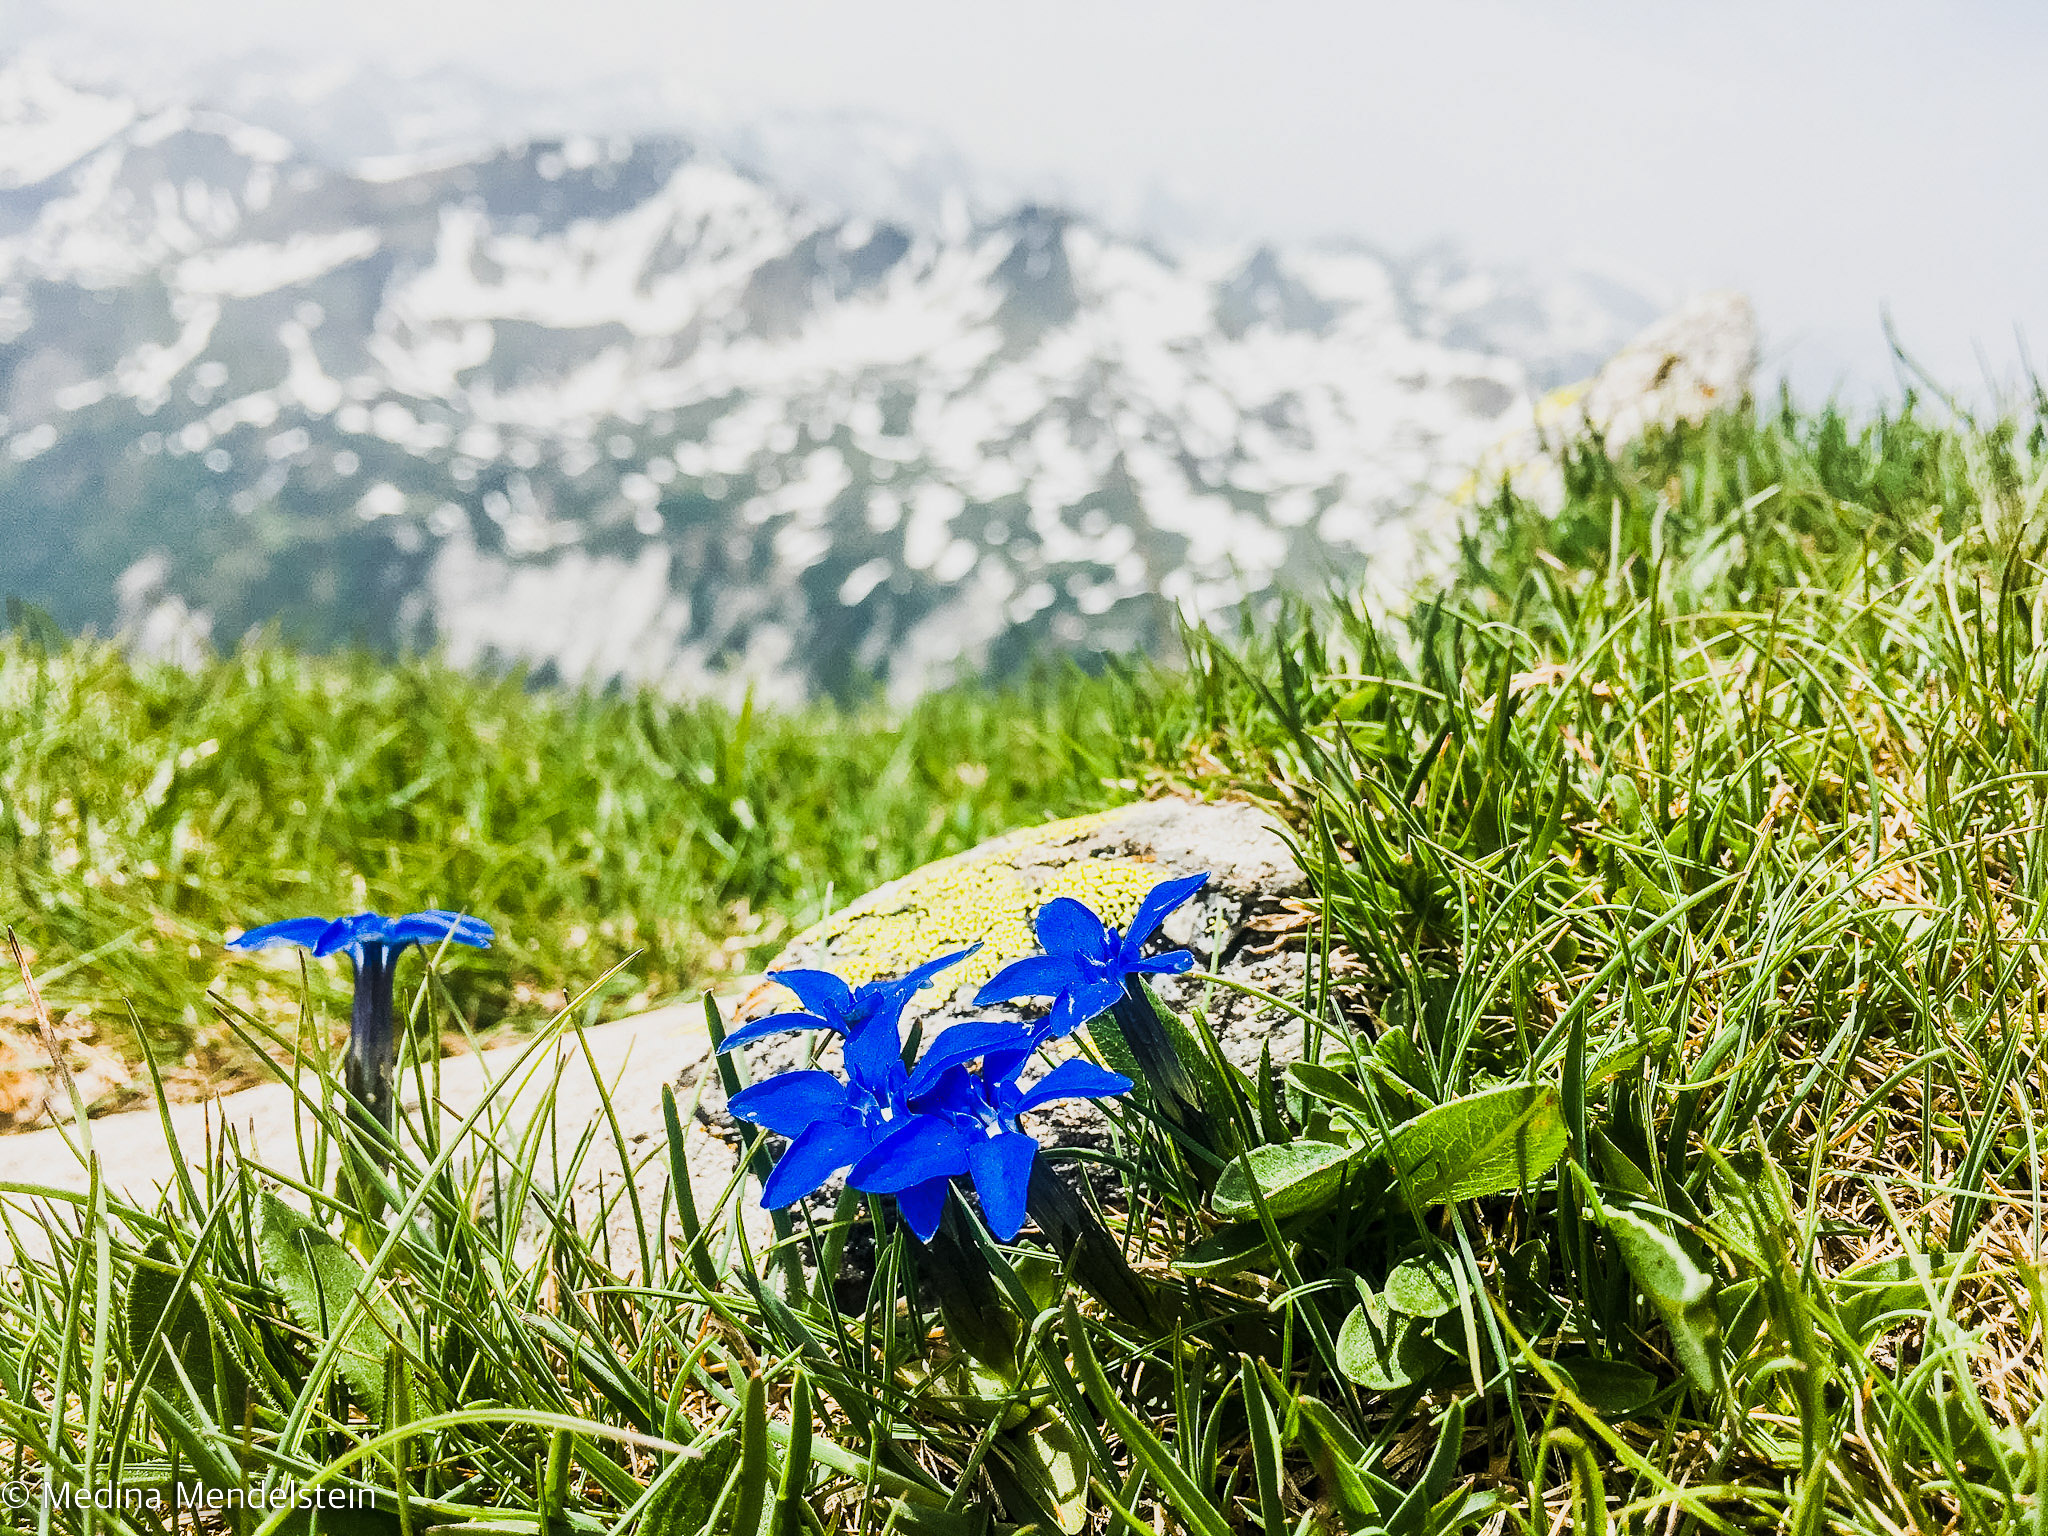 Alpen: Im Vordergrund Alpenveilchen auf einer grünen Wiese. Im Hintergrund schneebedeckte Berge.